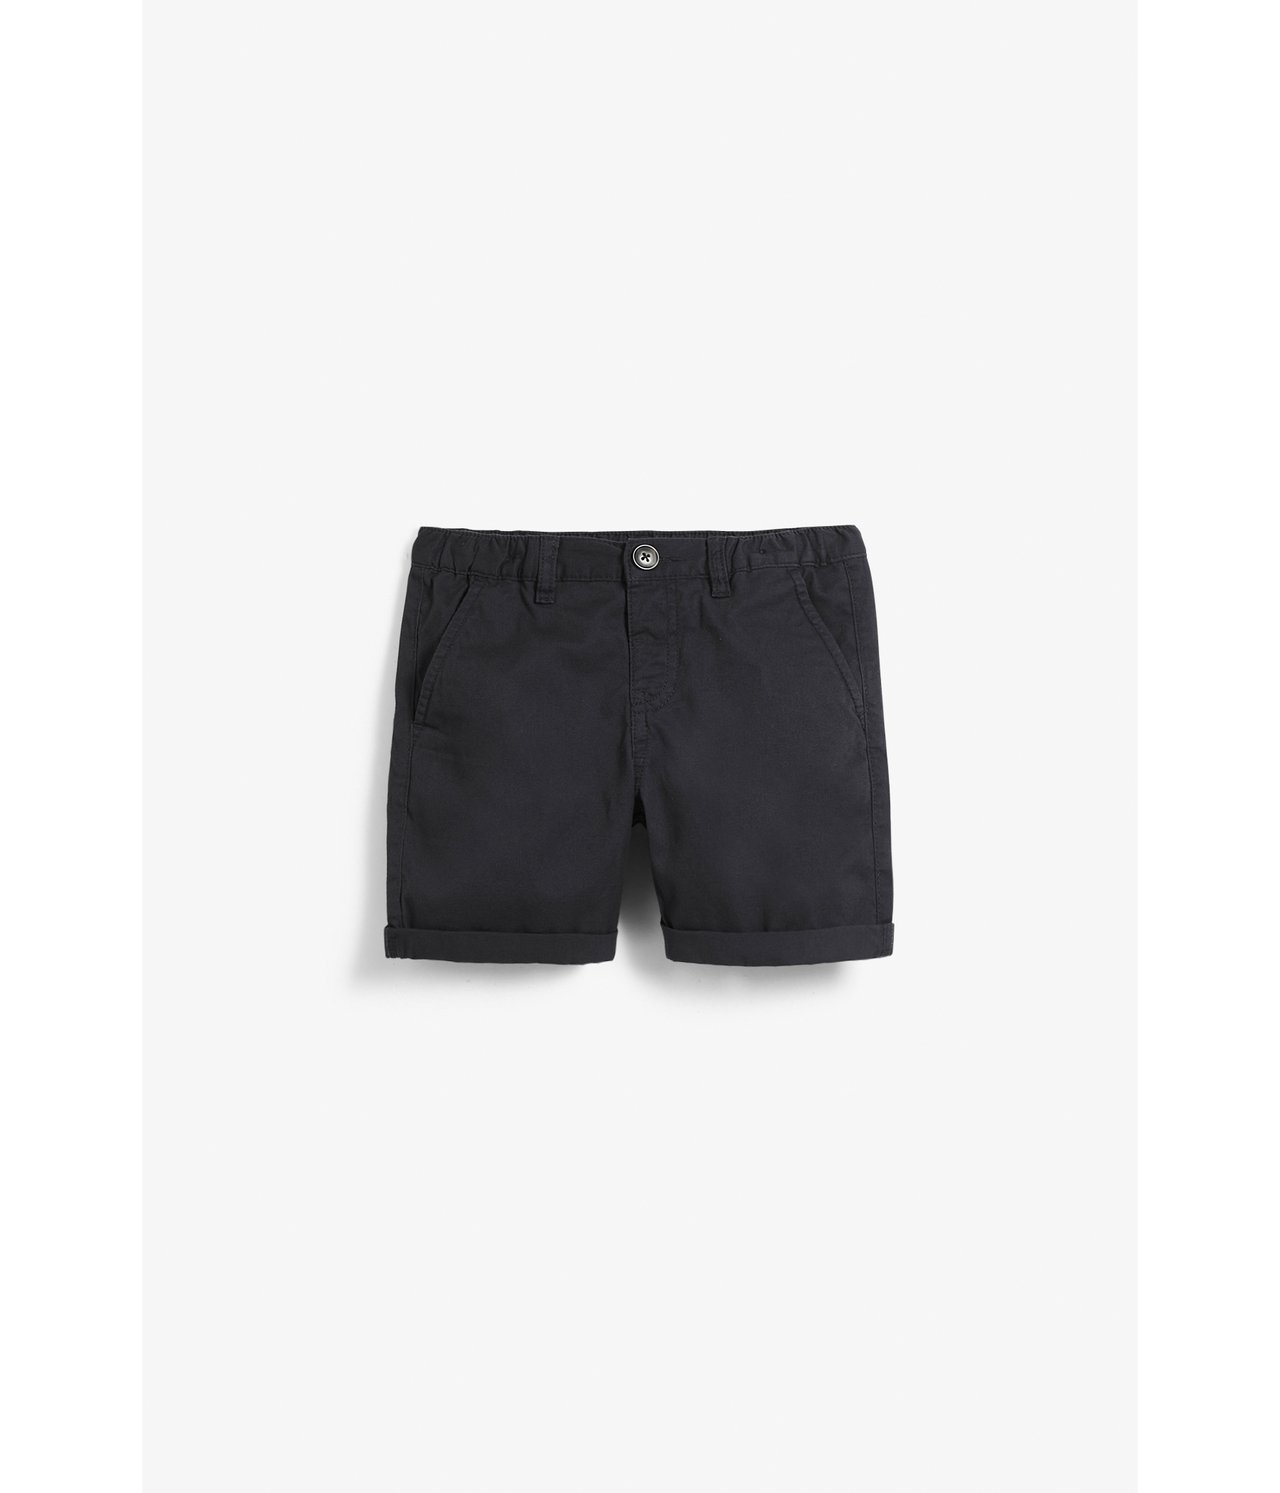 Vevd shorts - Svart - 2